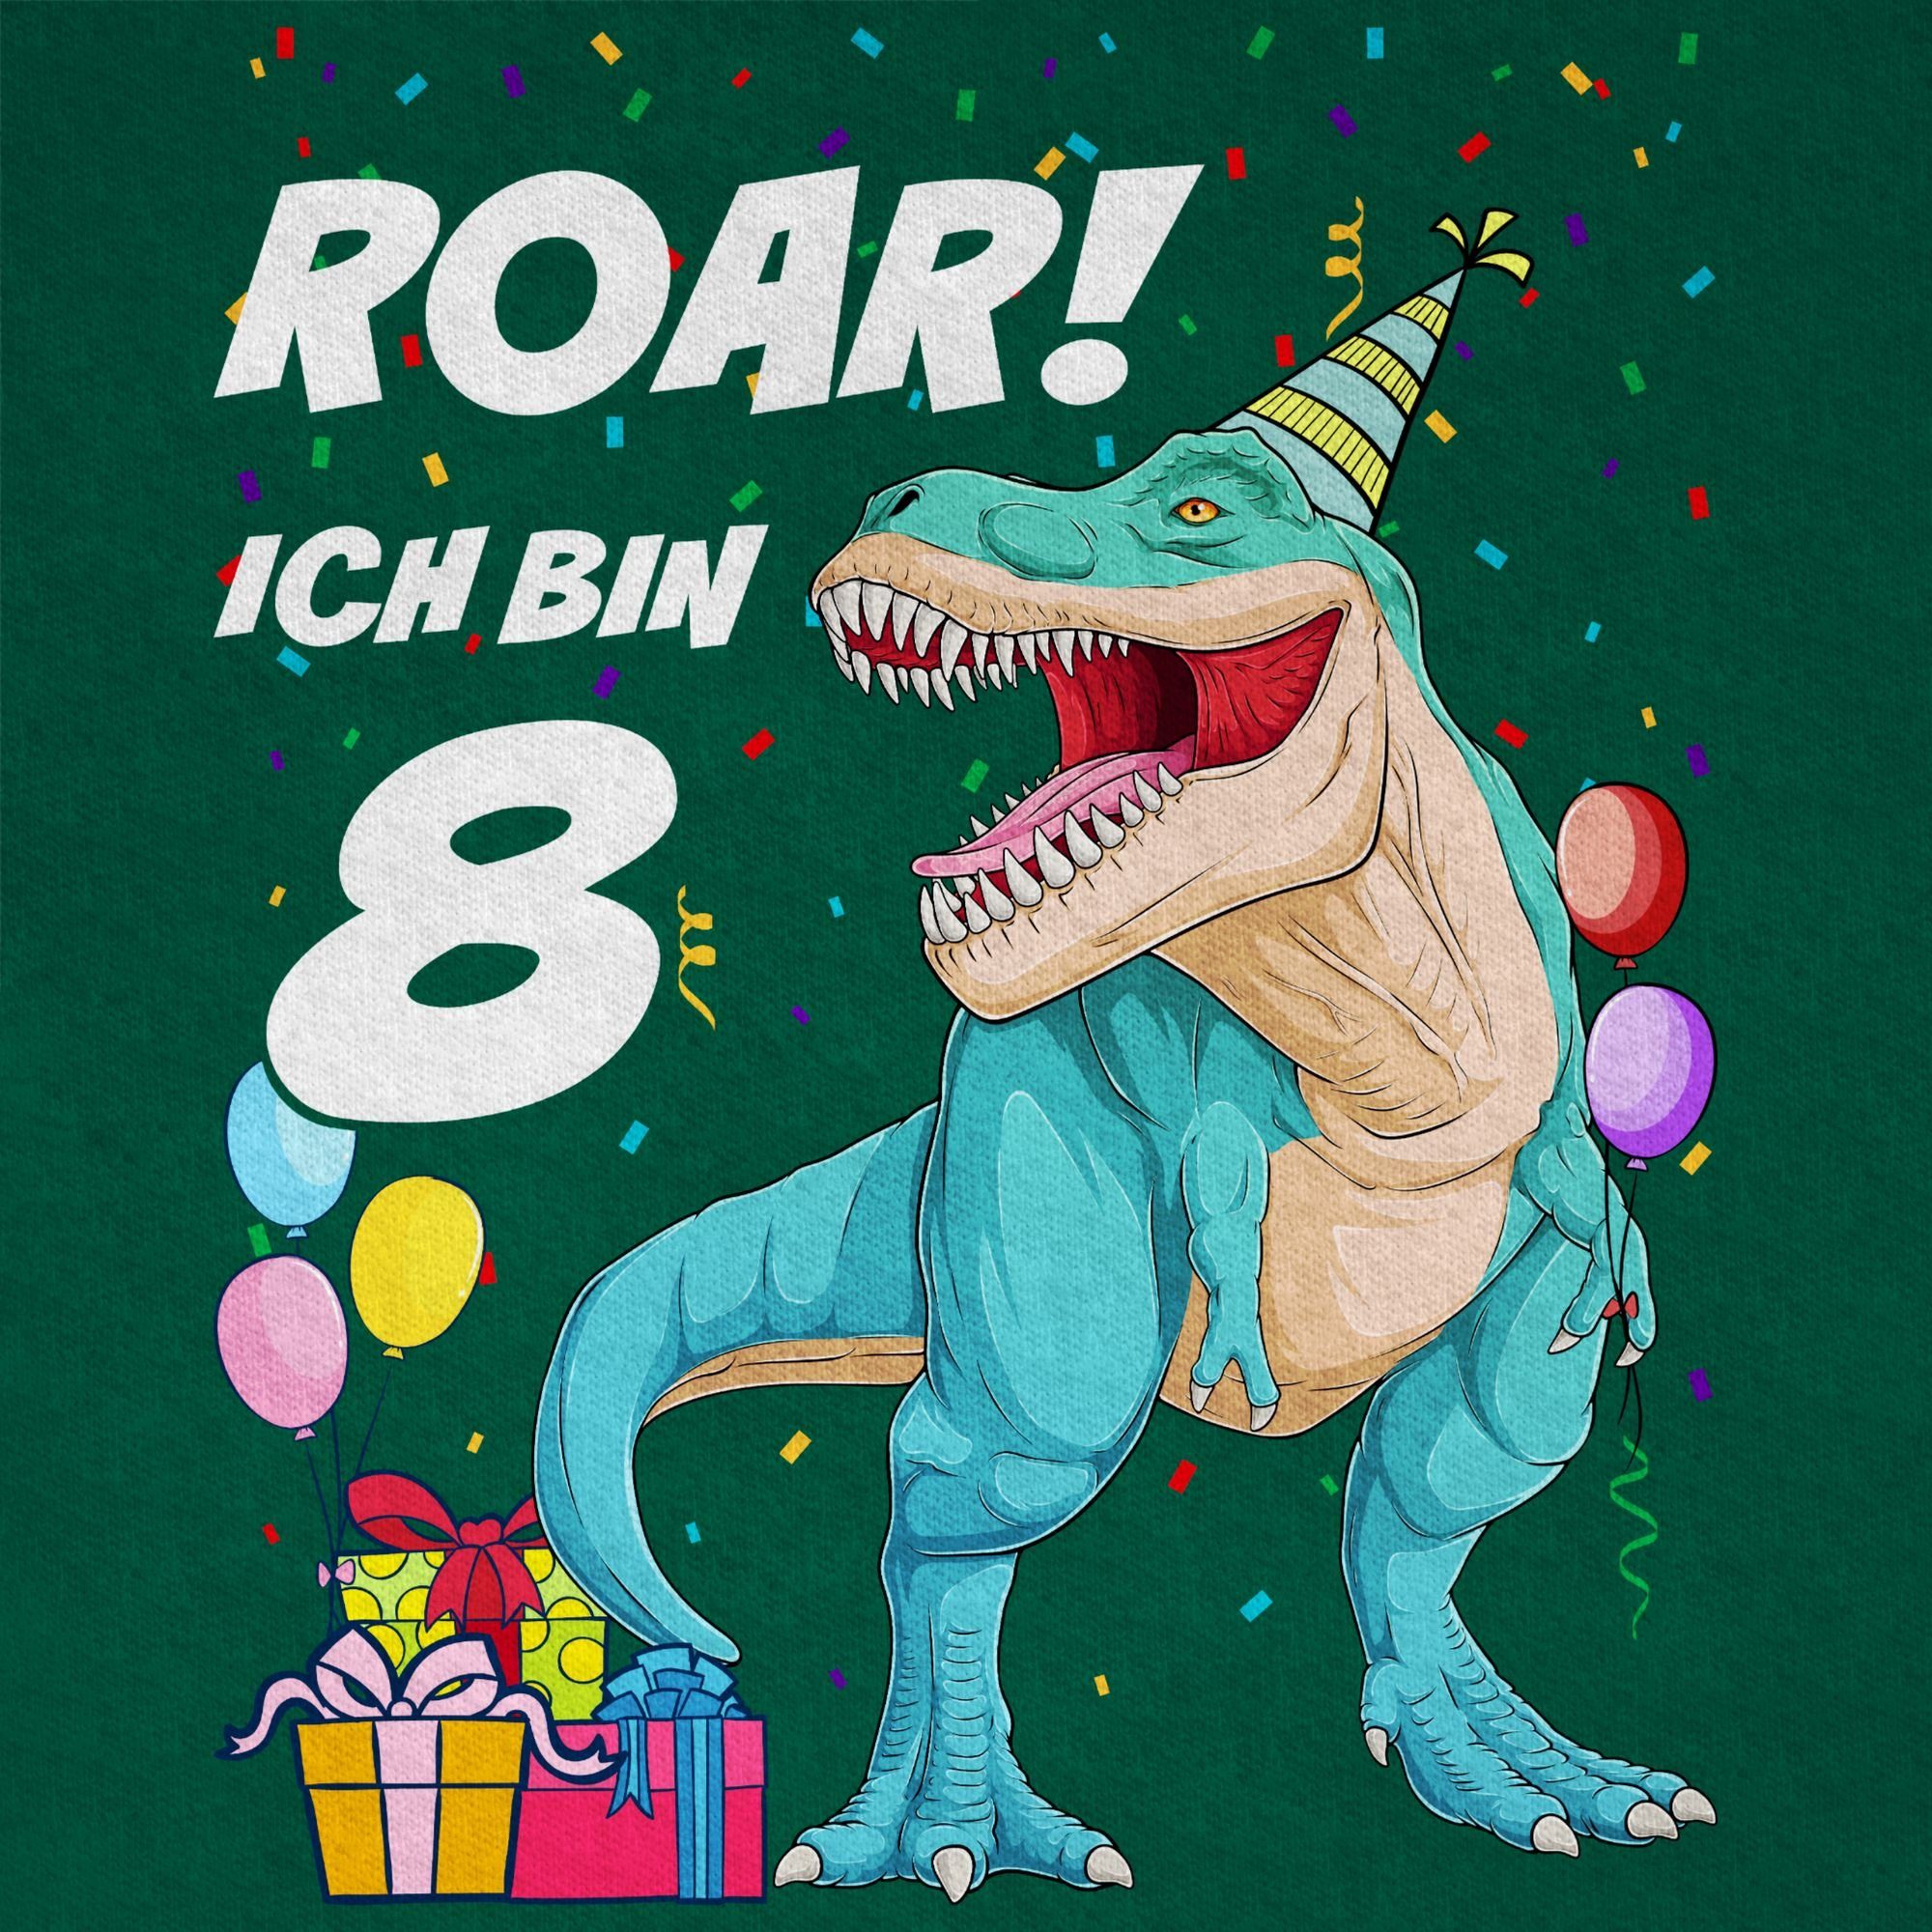 T-Rex bin Jahre 8 Shirtracer Tannengrün Geburtstag Ich 02 Dinosaurier Dino T-Shirt - 8.